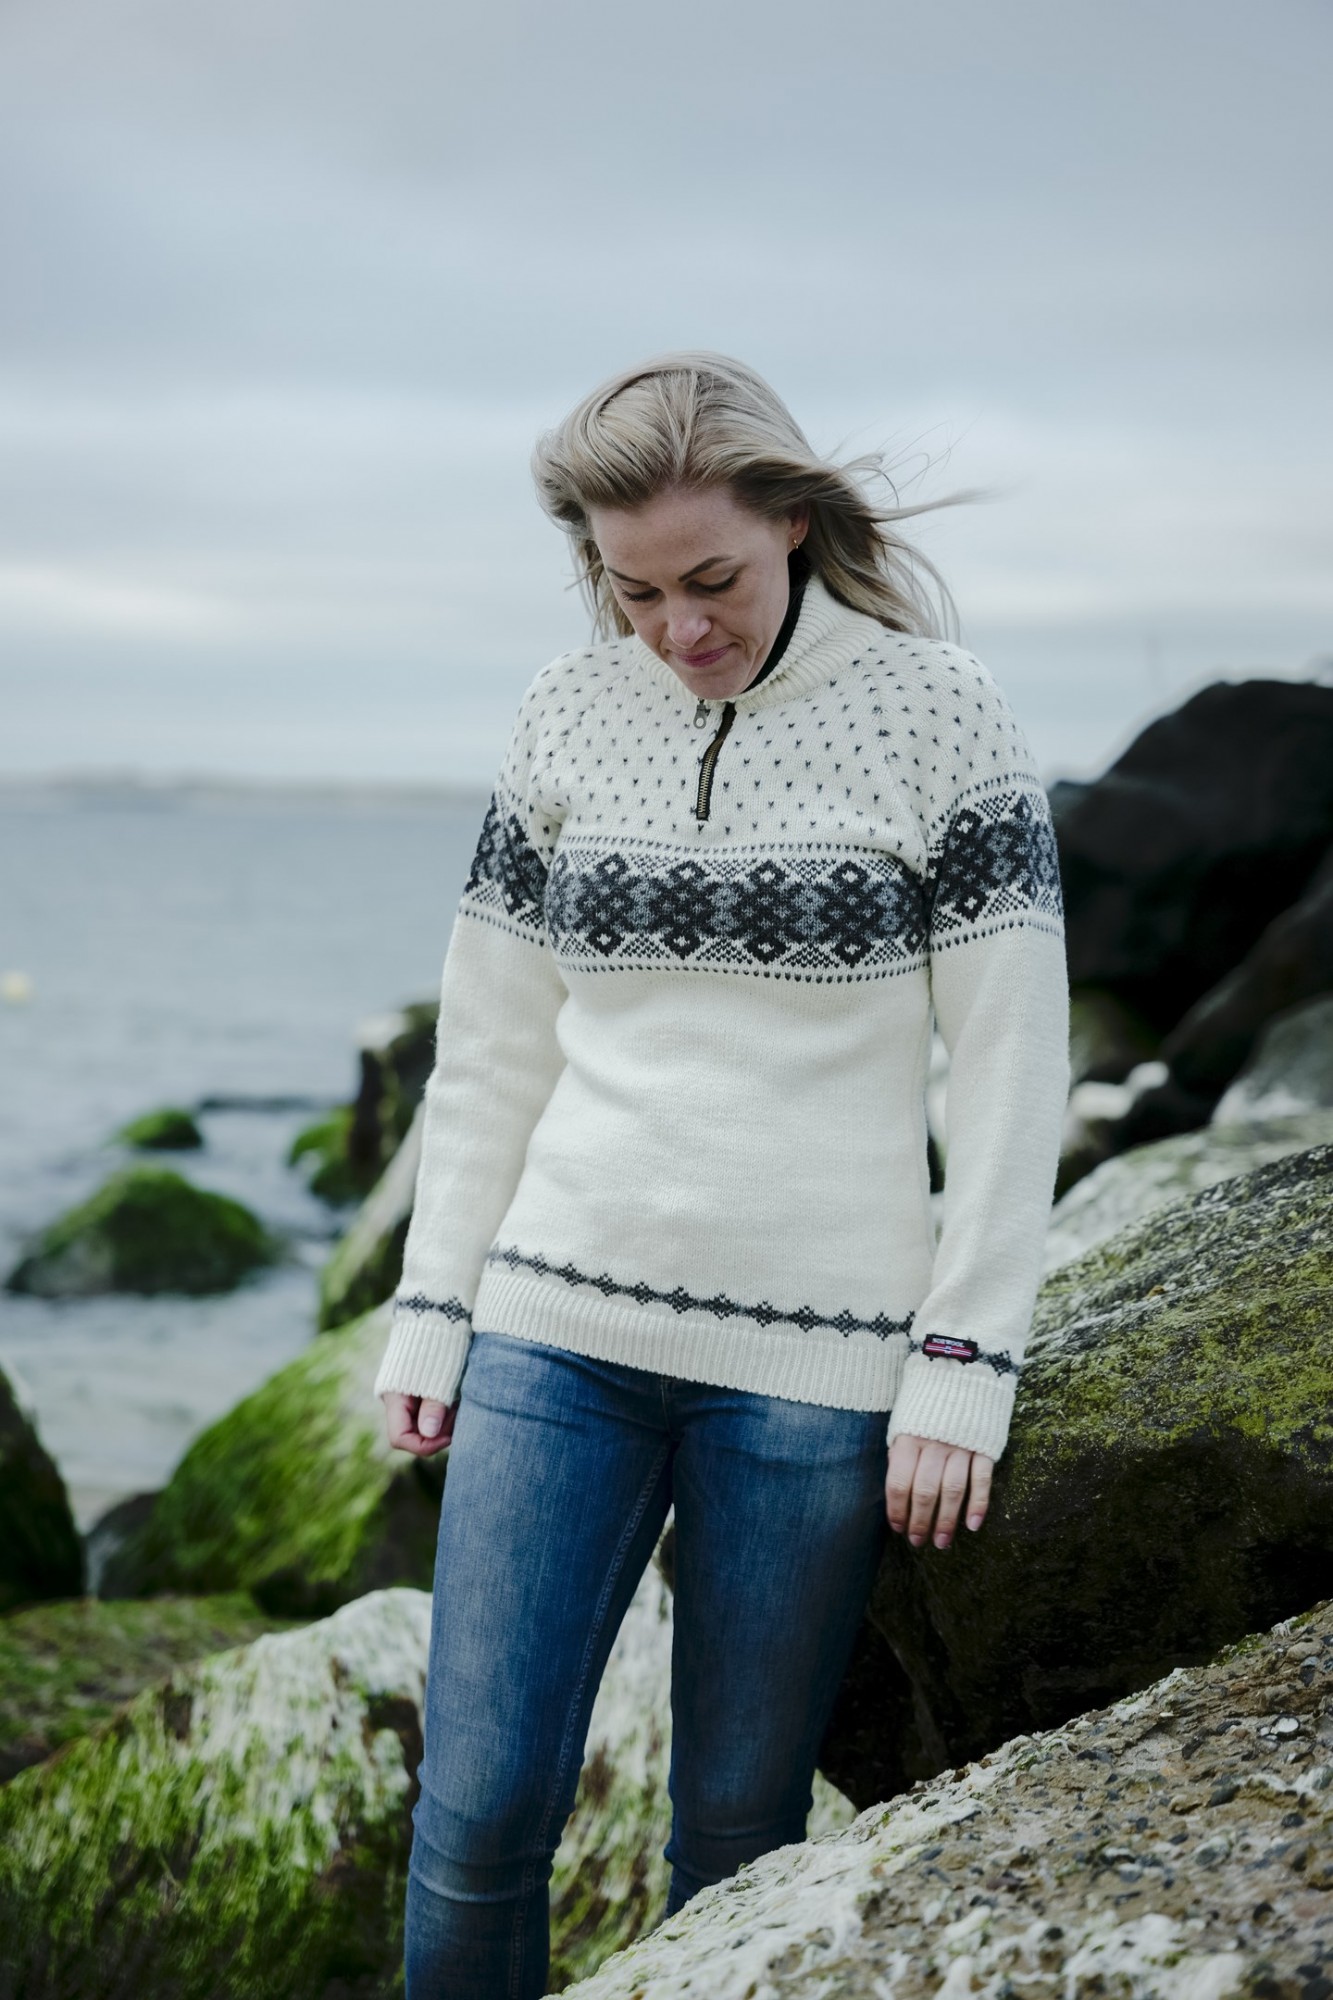 Norsk uld sweater af ny uld produceret af Norwool